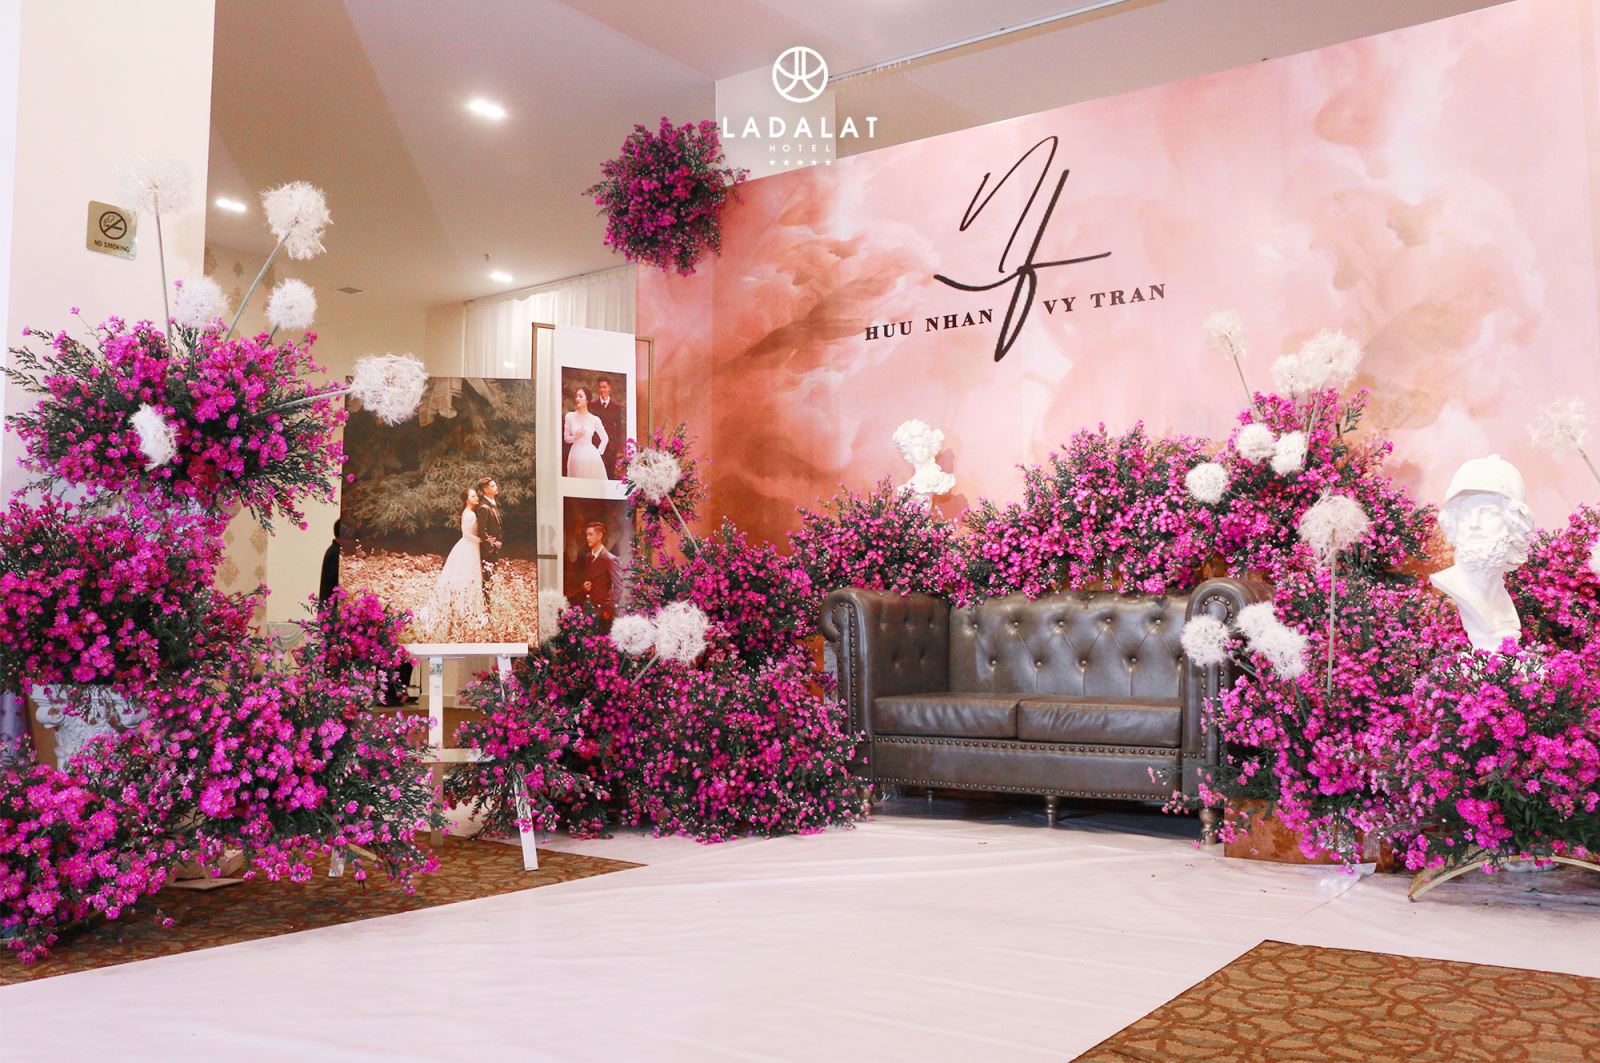 Ladalat sẽ hỗ trợ bạn trang trí không gian tiệc cưới với hoa, nến và các chi tiết tinh tế, sang trọng | ưu đãi tiệc cưới